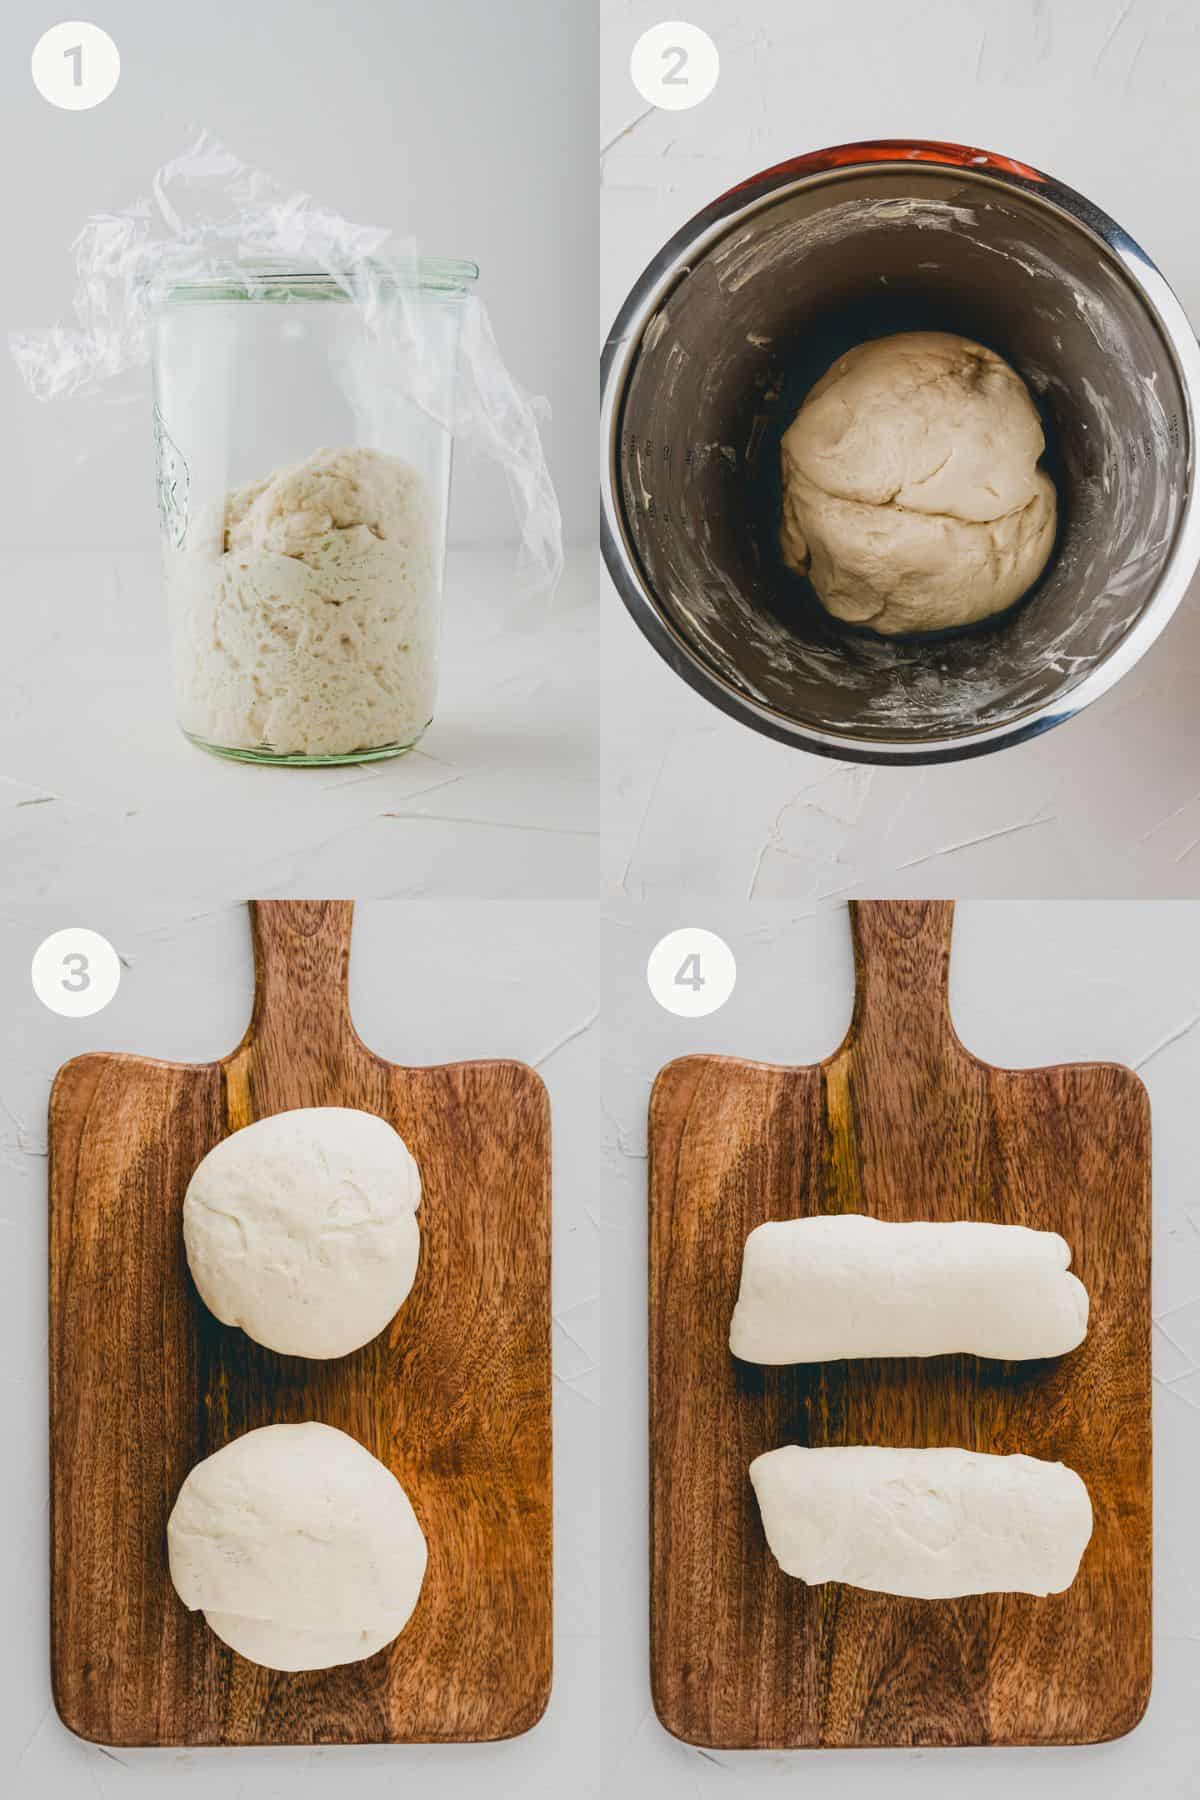 Zopf Bread Recipe Step 1-4